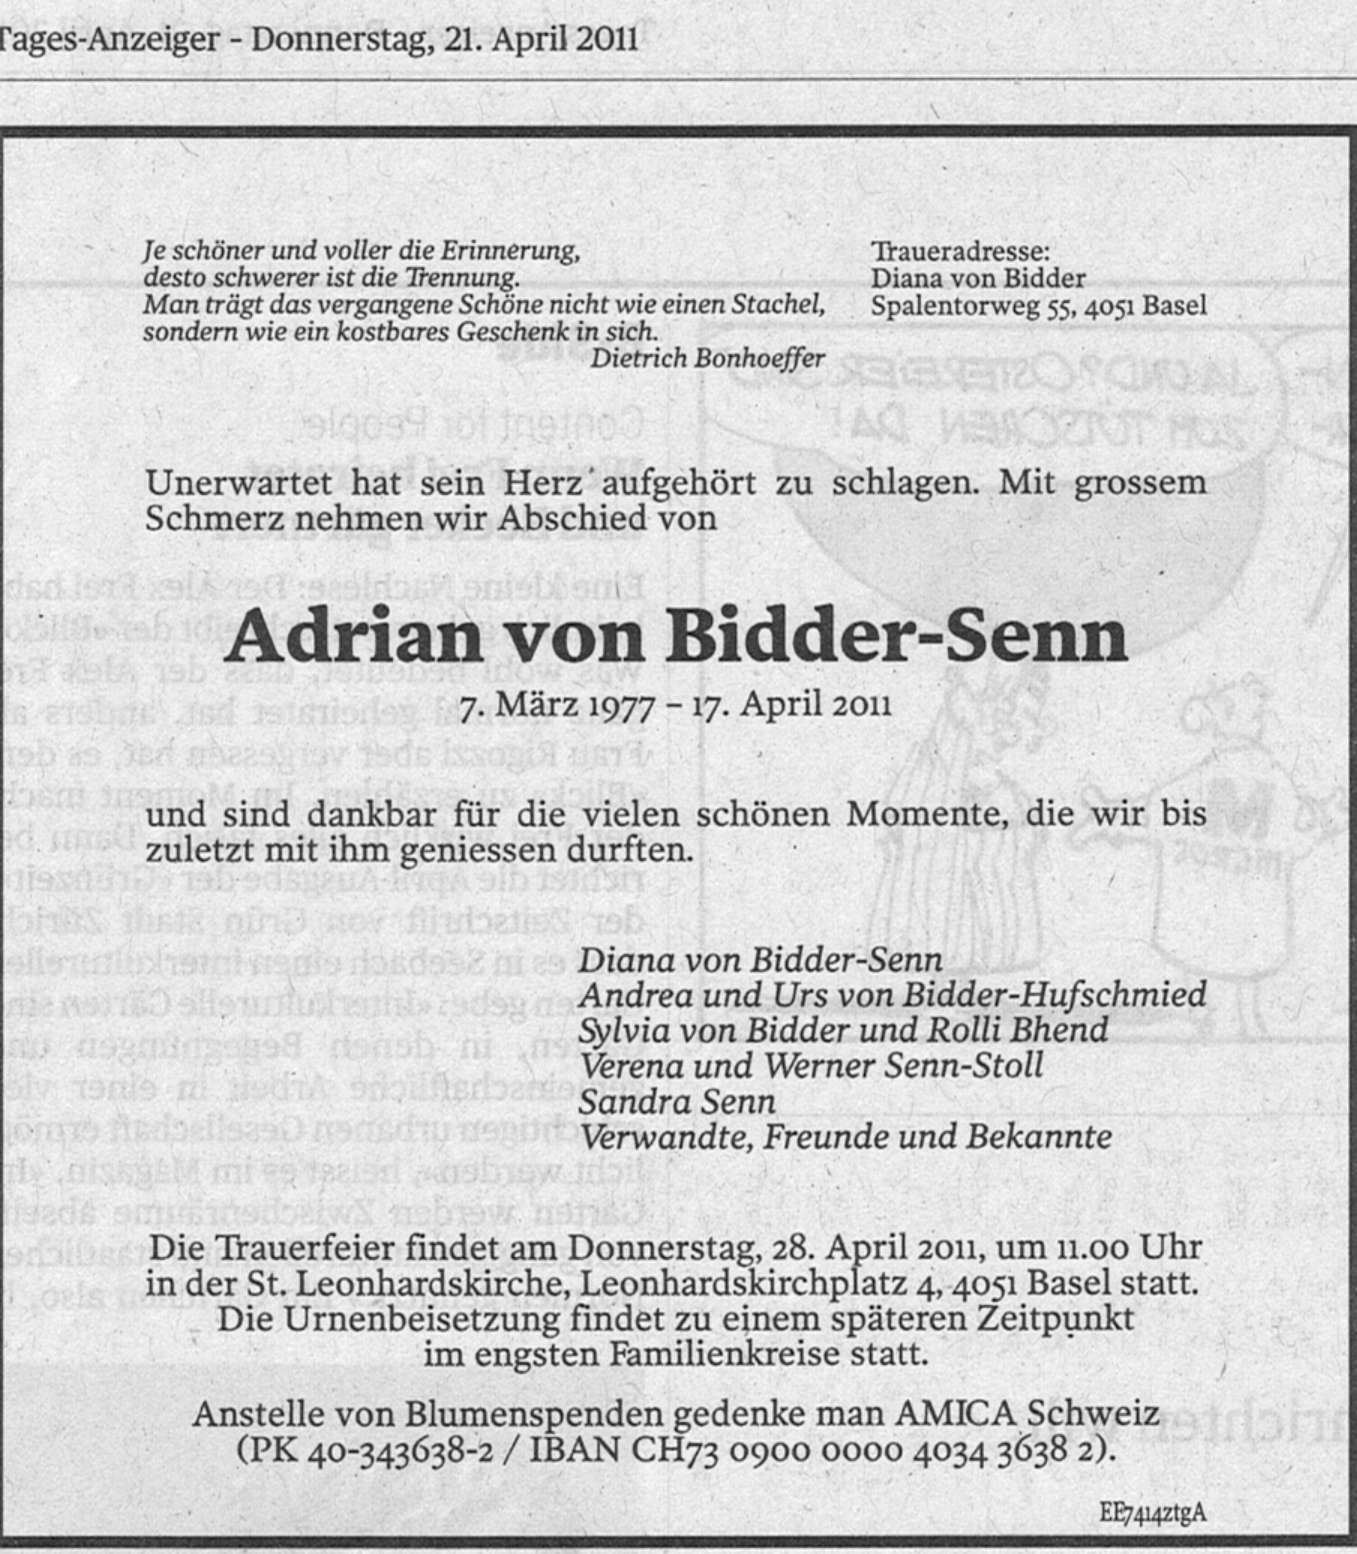 Adrian von Bidder, Debian, AMICA Schweiz, Diana von Bidder